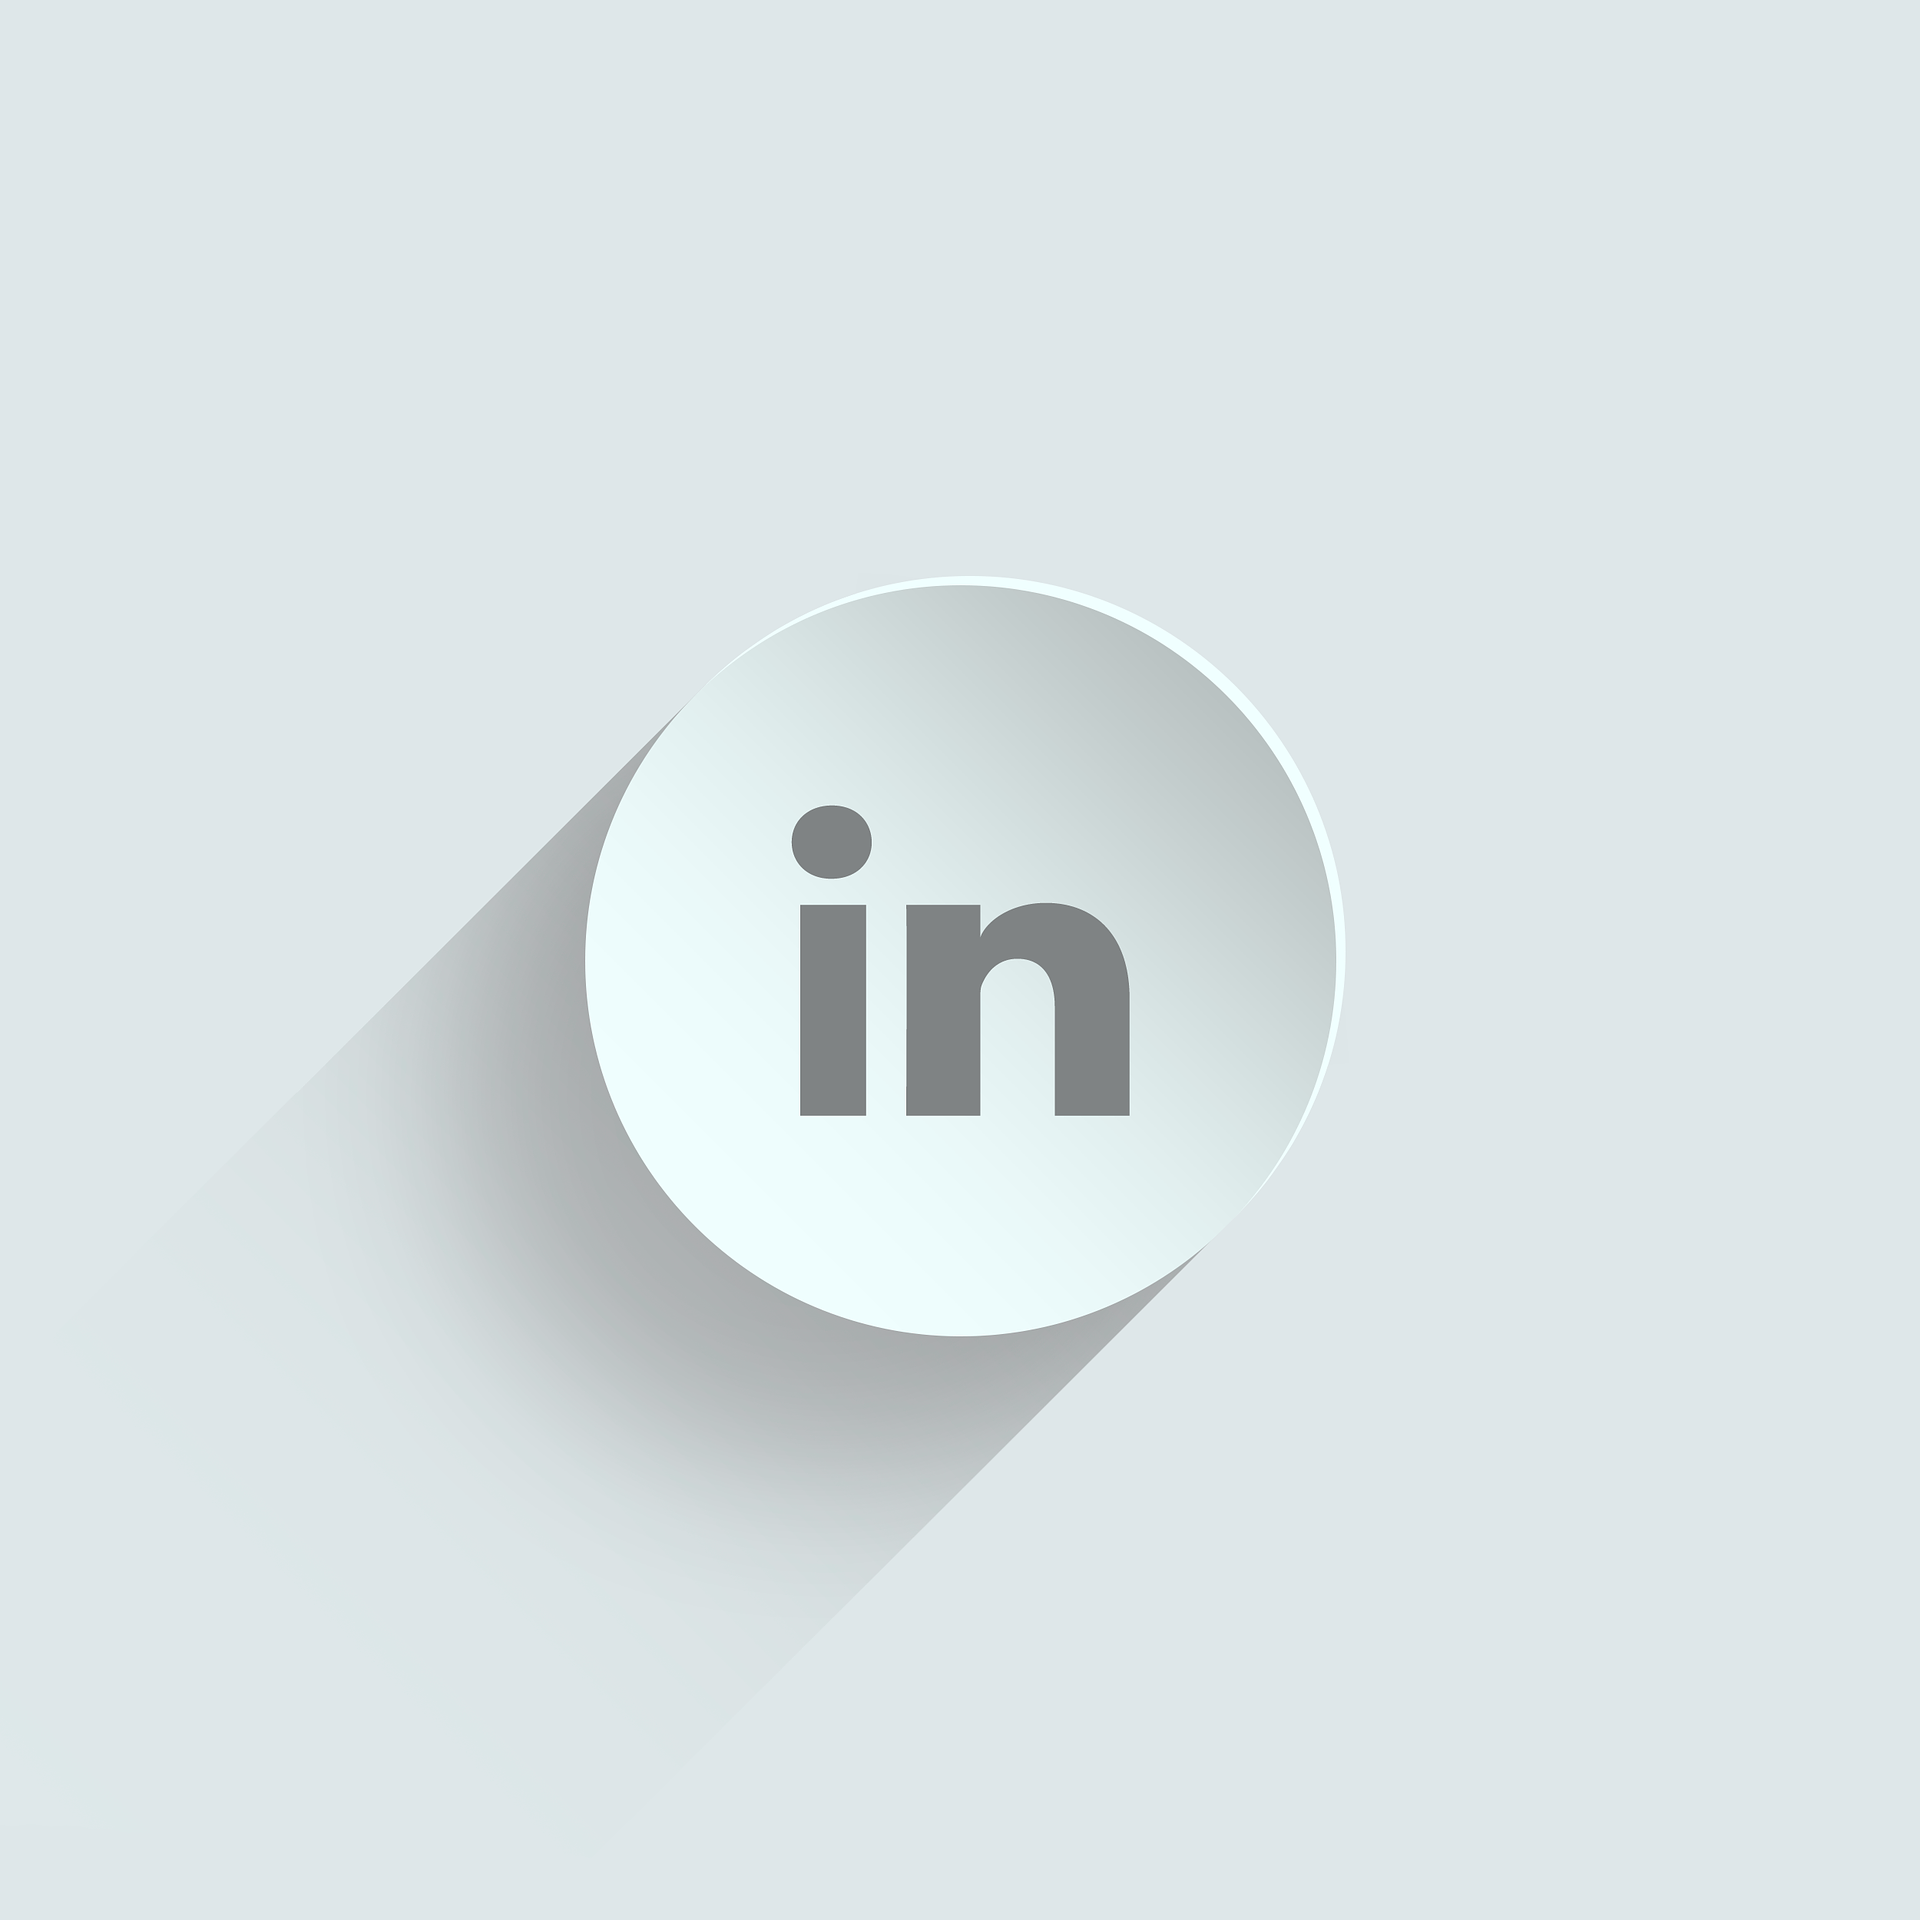 Co daje konto LinkedIn Premium – 5 powodów - zdjęcie nr 2